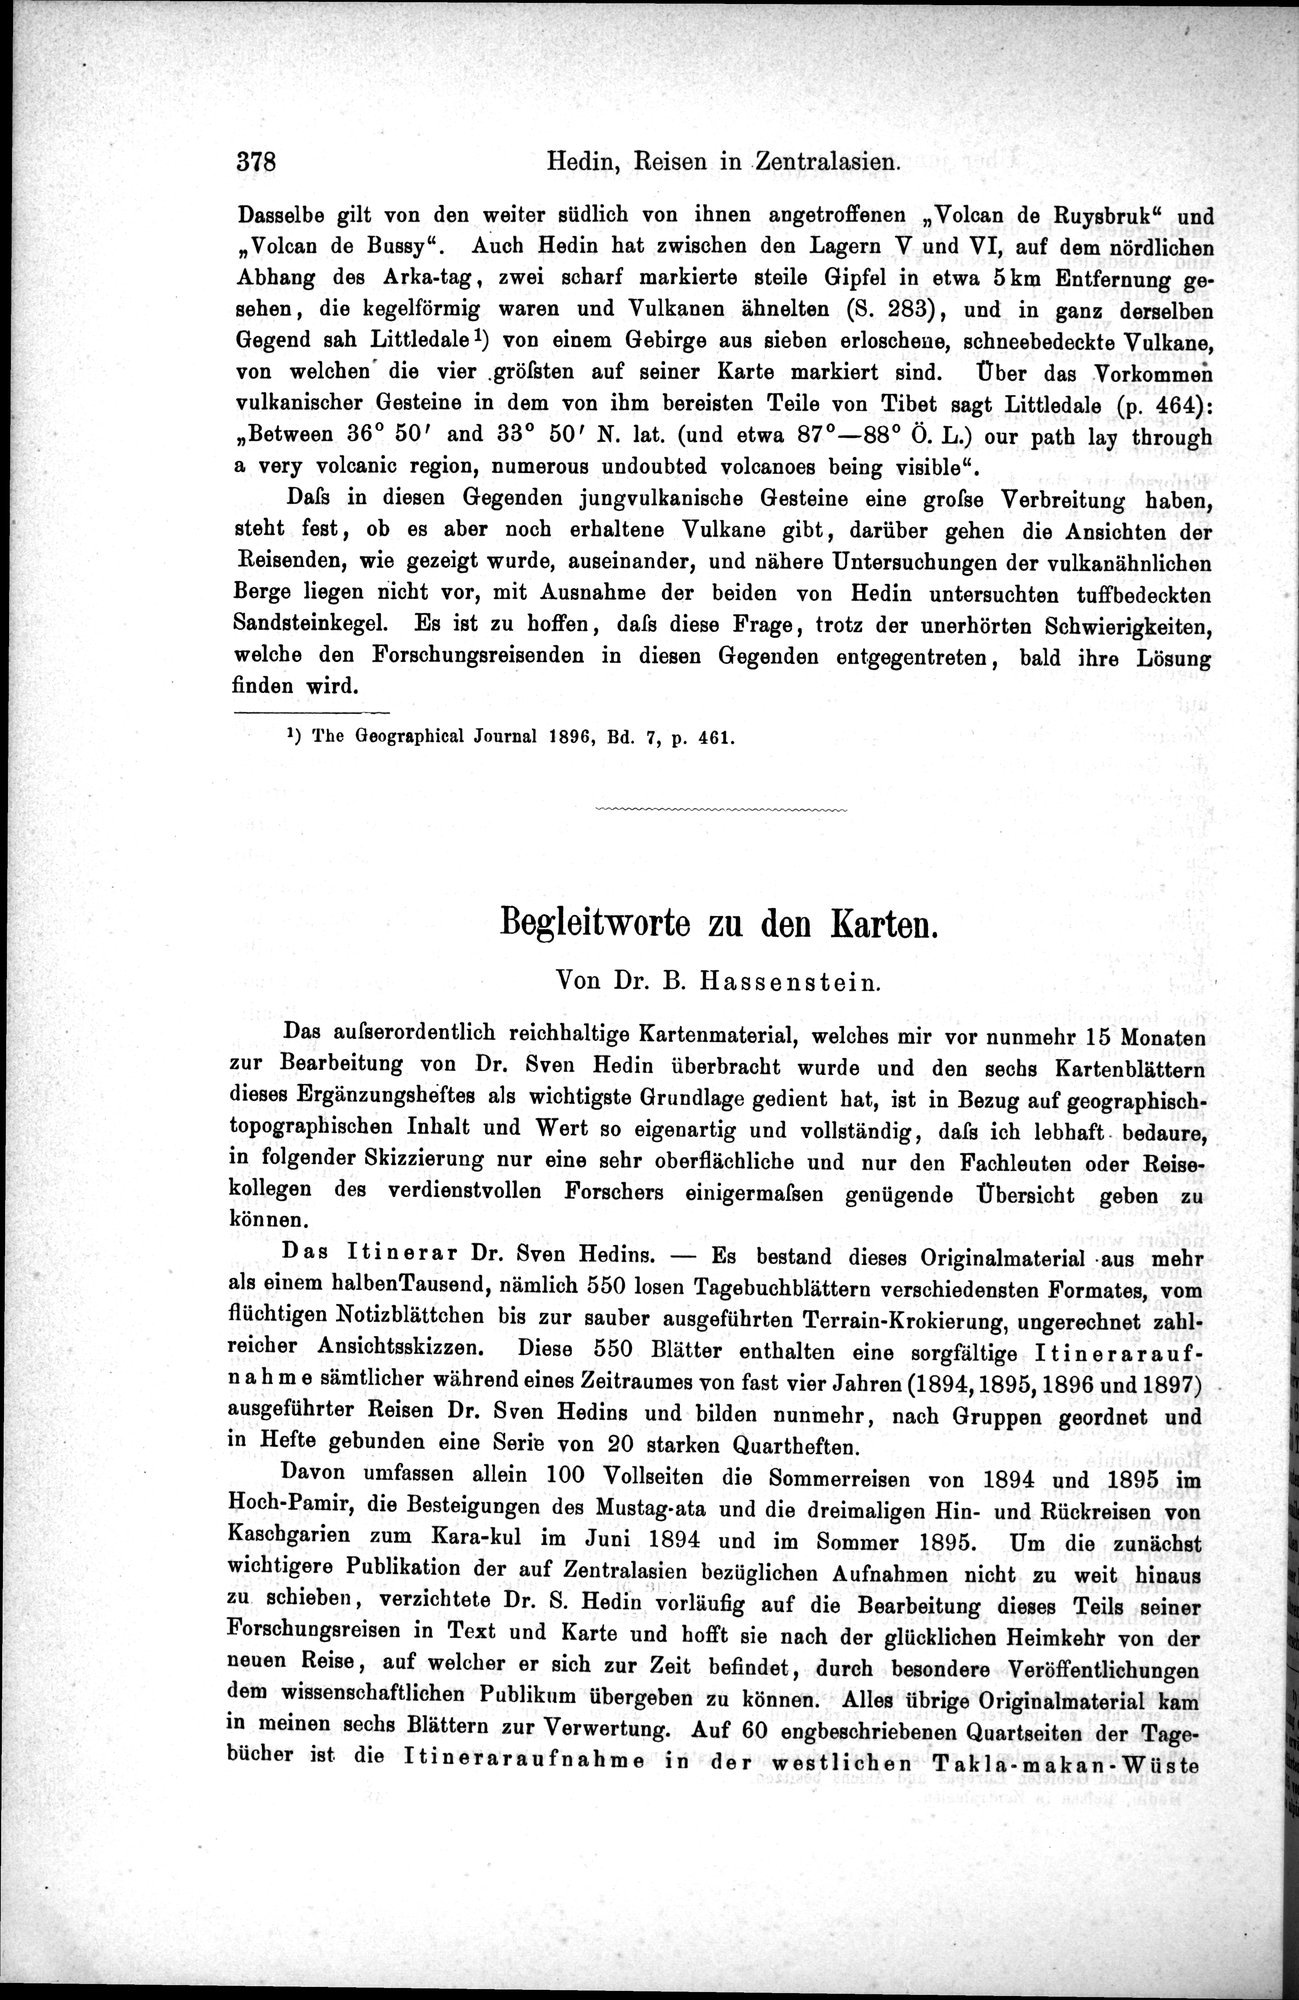 Die Geographische-Wissenschaftlichen Ergebnisse meiner Reisen in Zentralasien, 1894-1897 : vol.1 / Page 390 (Grayscale High Resolution Image)